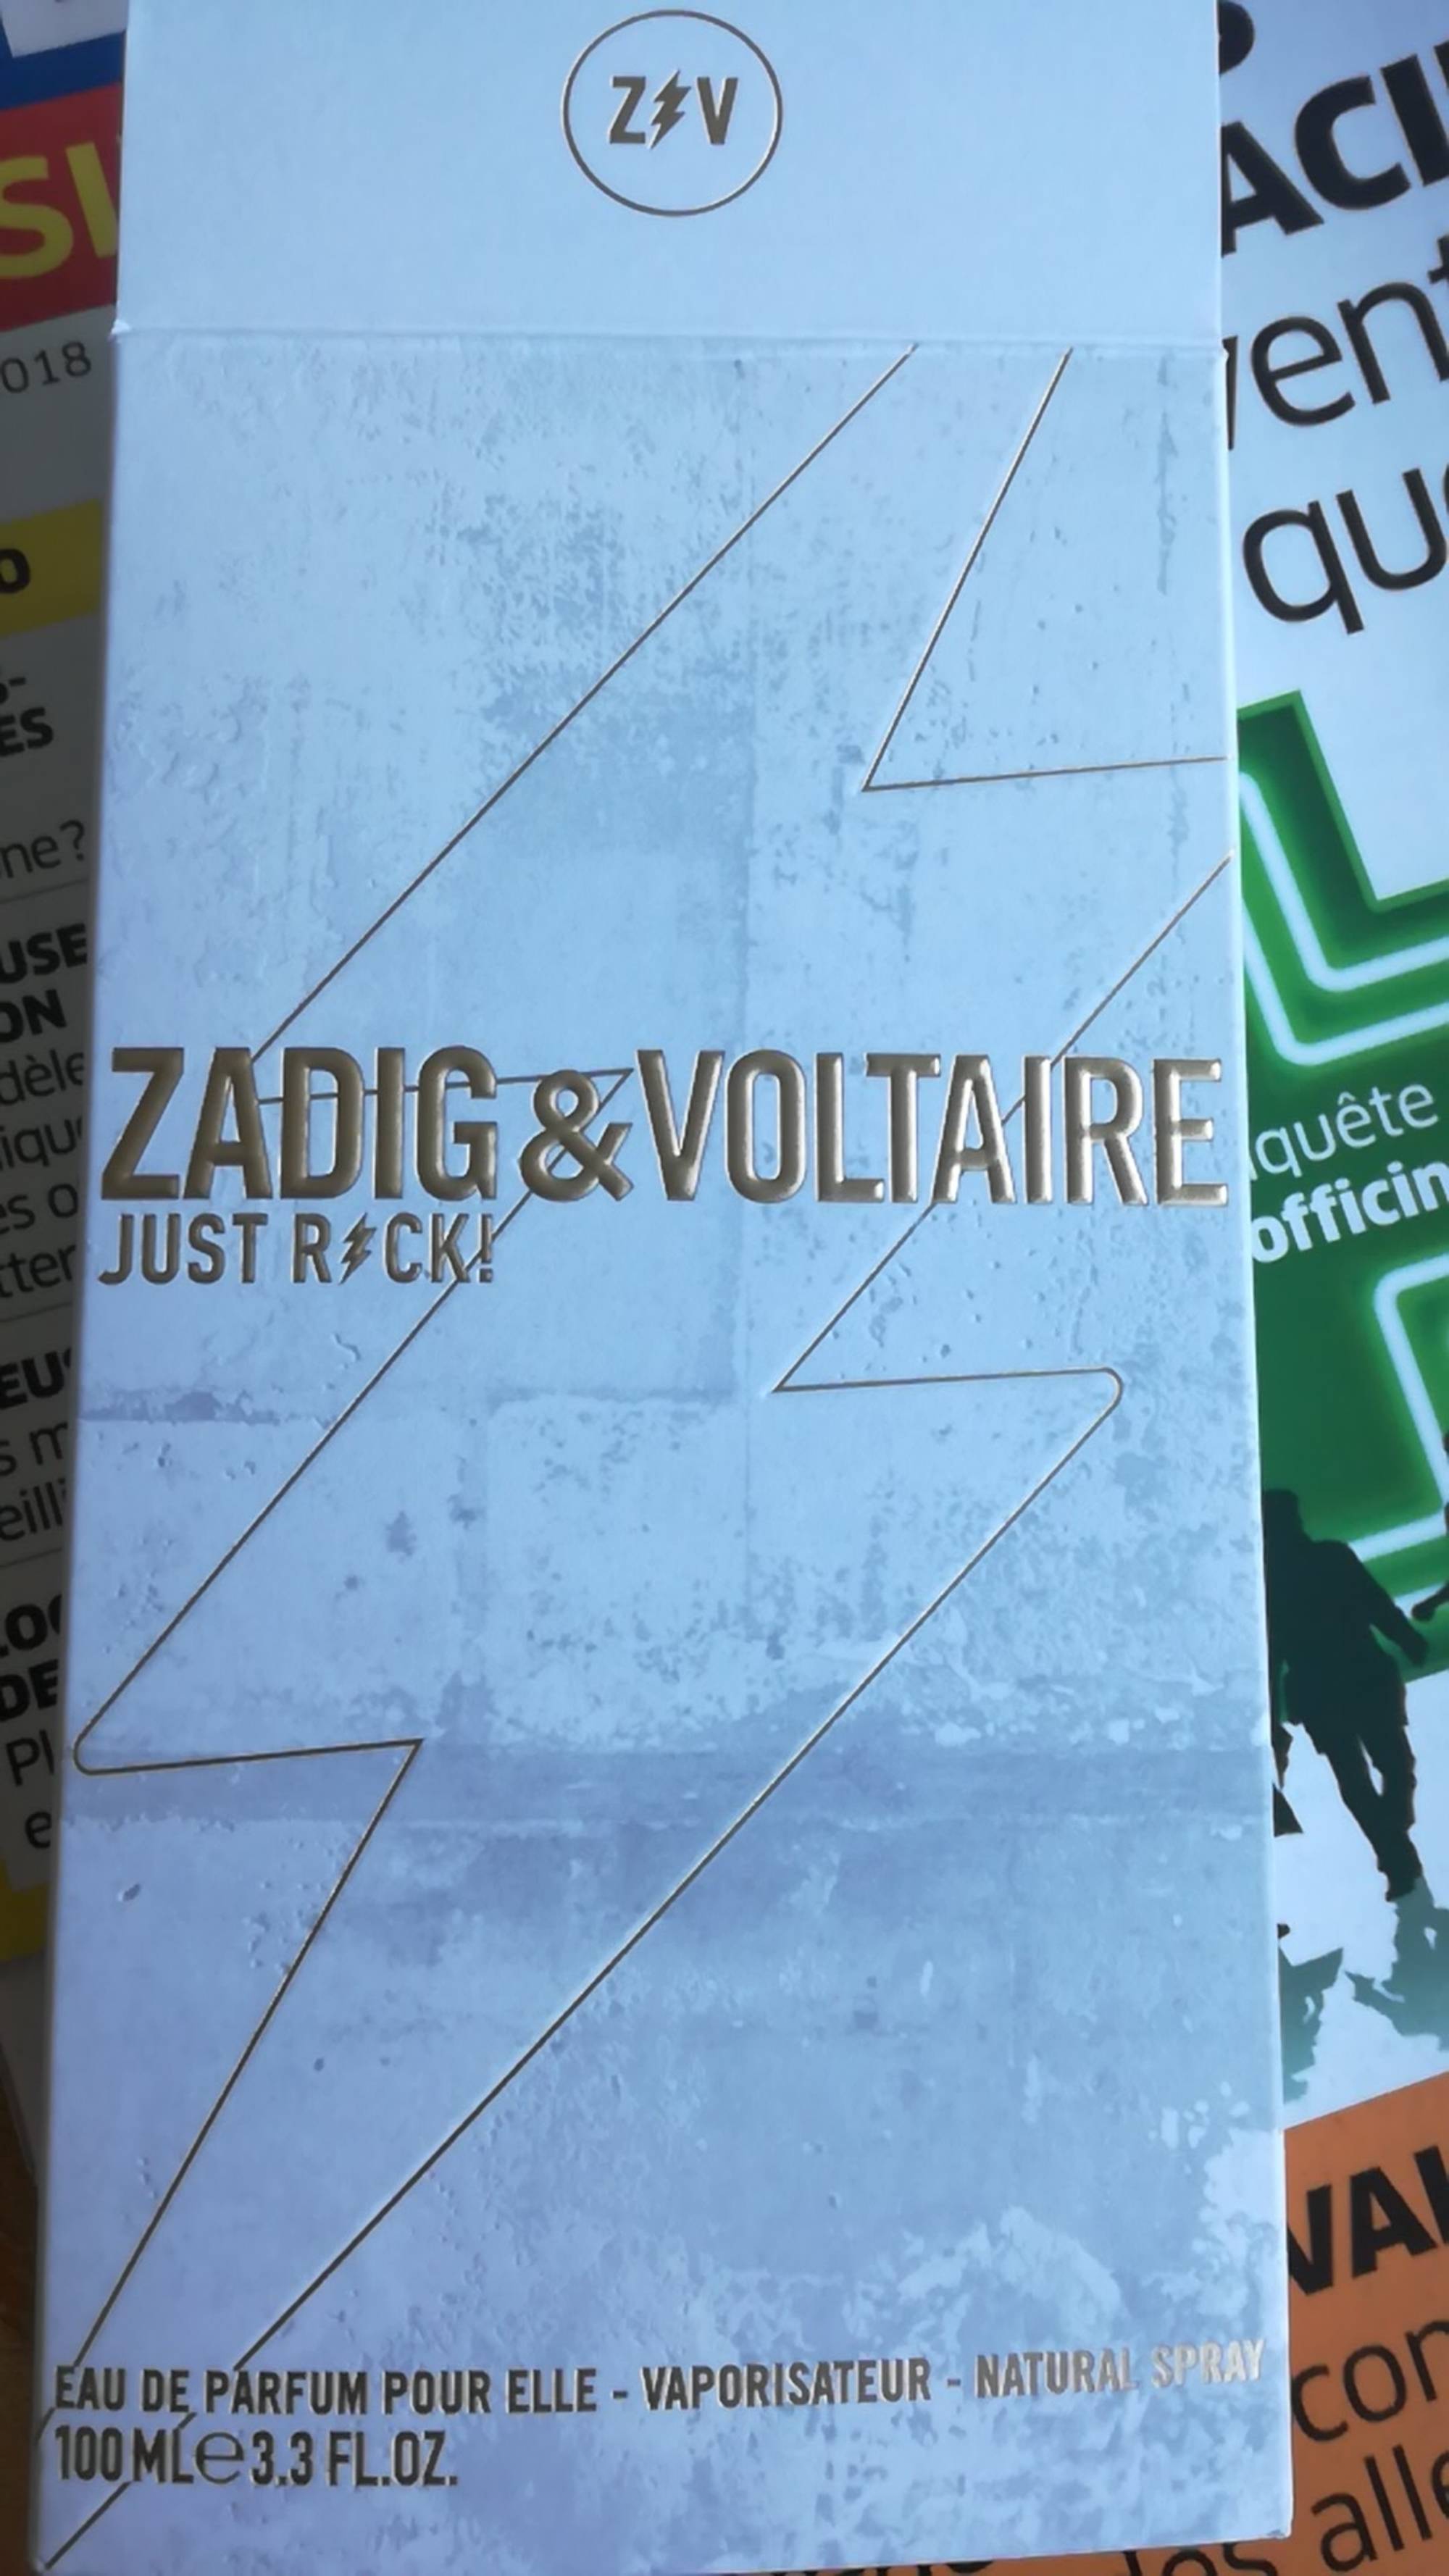 ZADIG & VOLTAIRE - Eau de parfum pour elle